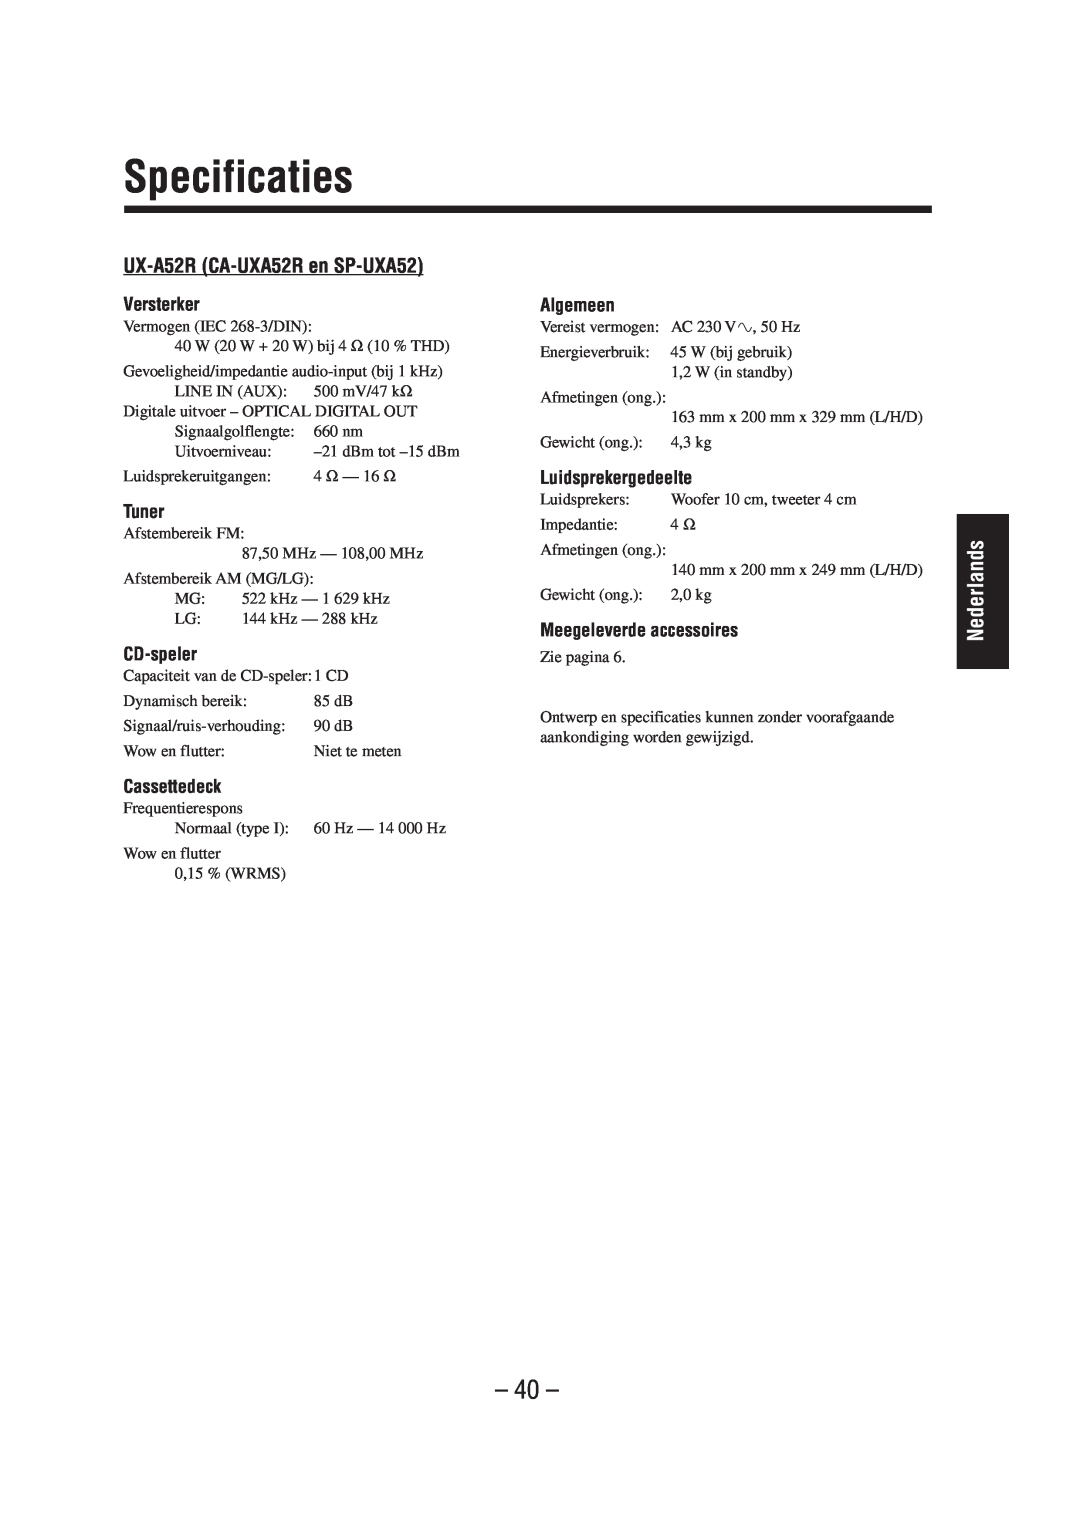 JVC manual Specificaties, UX-A52R CA-UXA52Ren SP-UXA52, Versterker, Tuner, CD-speler, Algemeen, Luidsprekergedeelte 